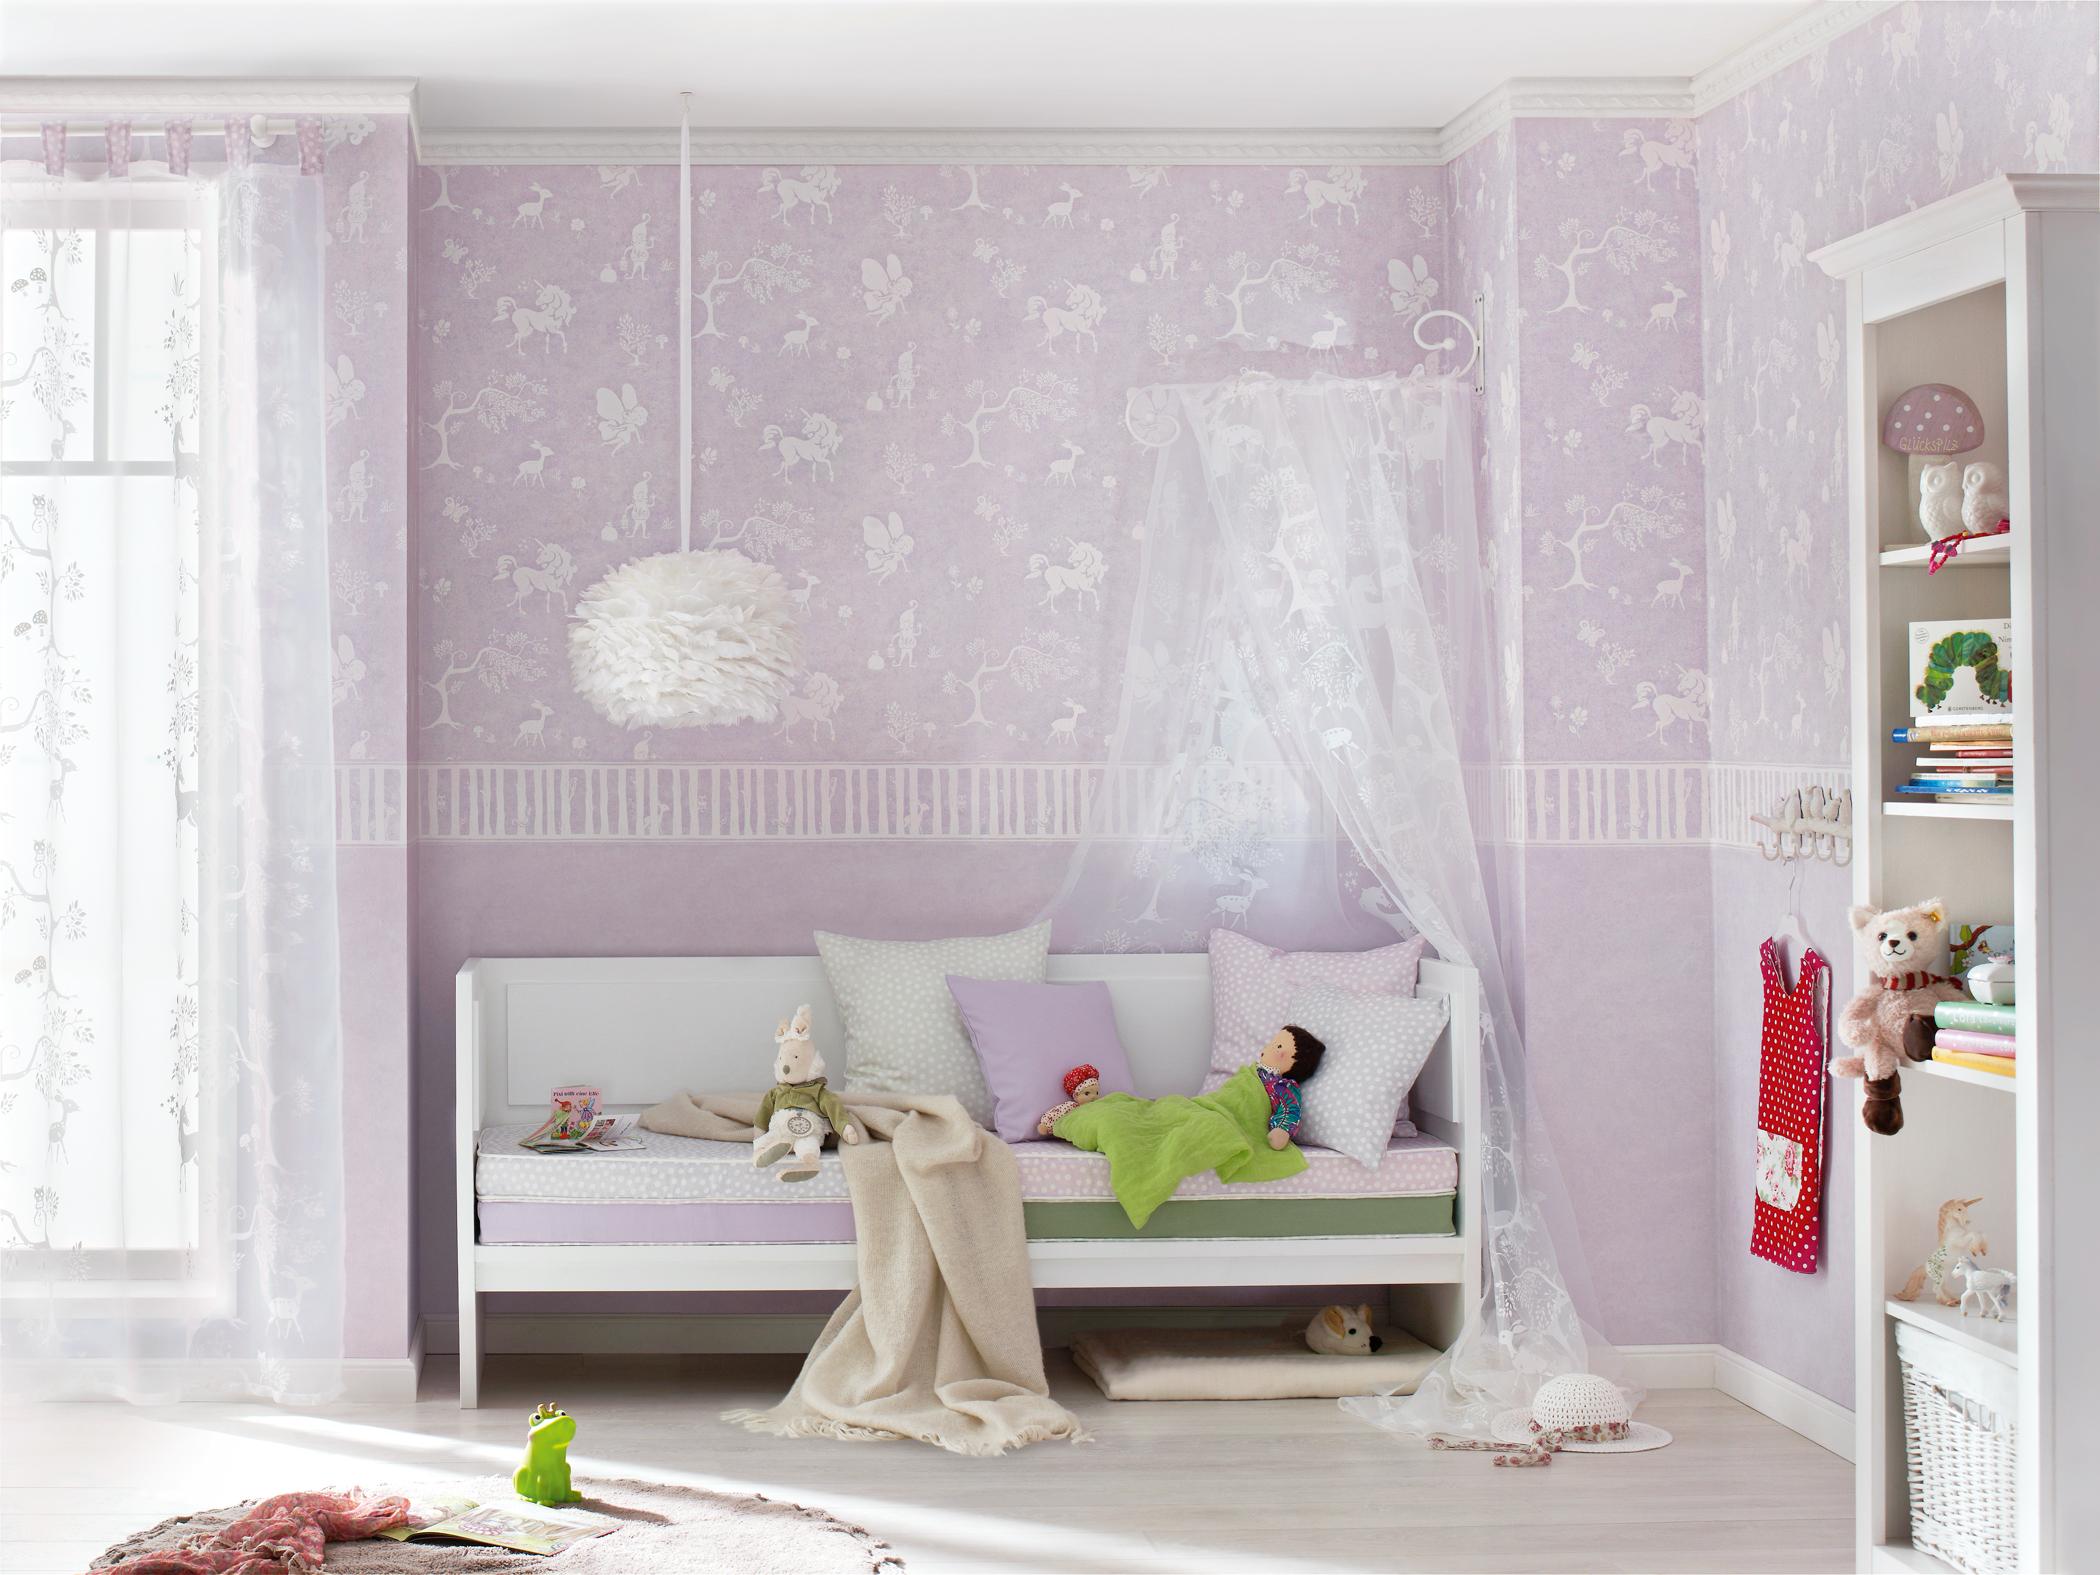 Himmelbett im Mädchen-Kinderzimmer #wandgestaltung #himmelbett #mädchenzimmer ©Rasch